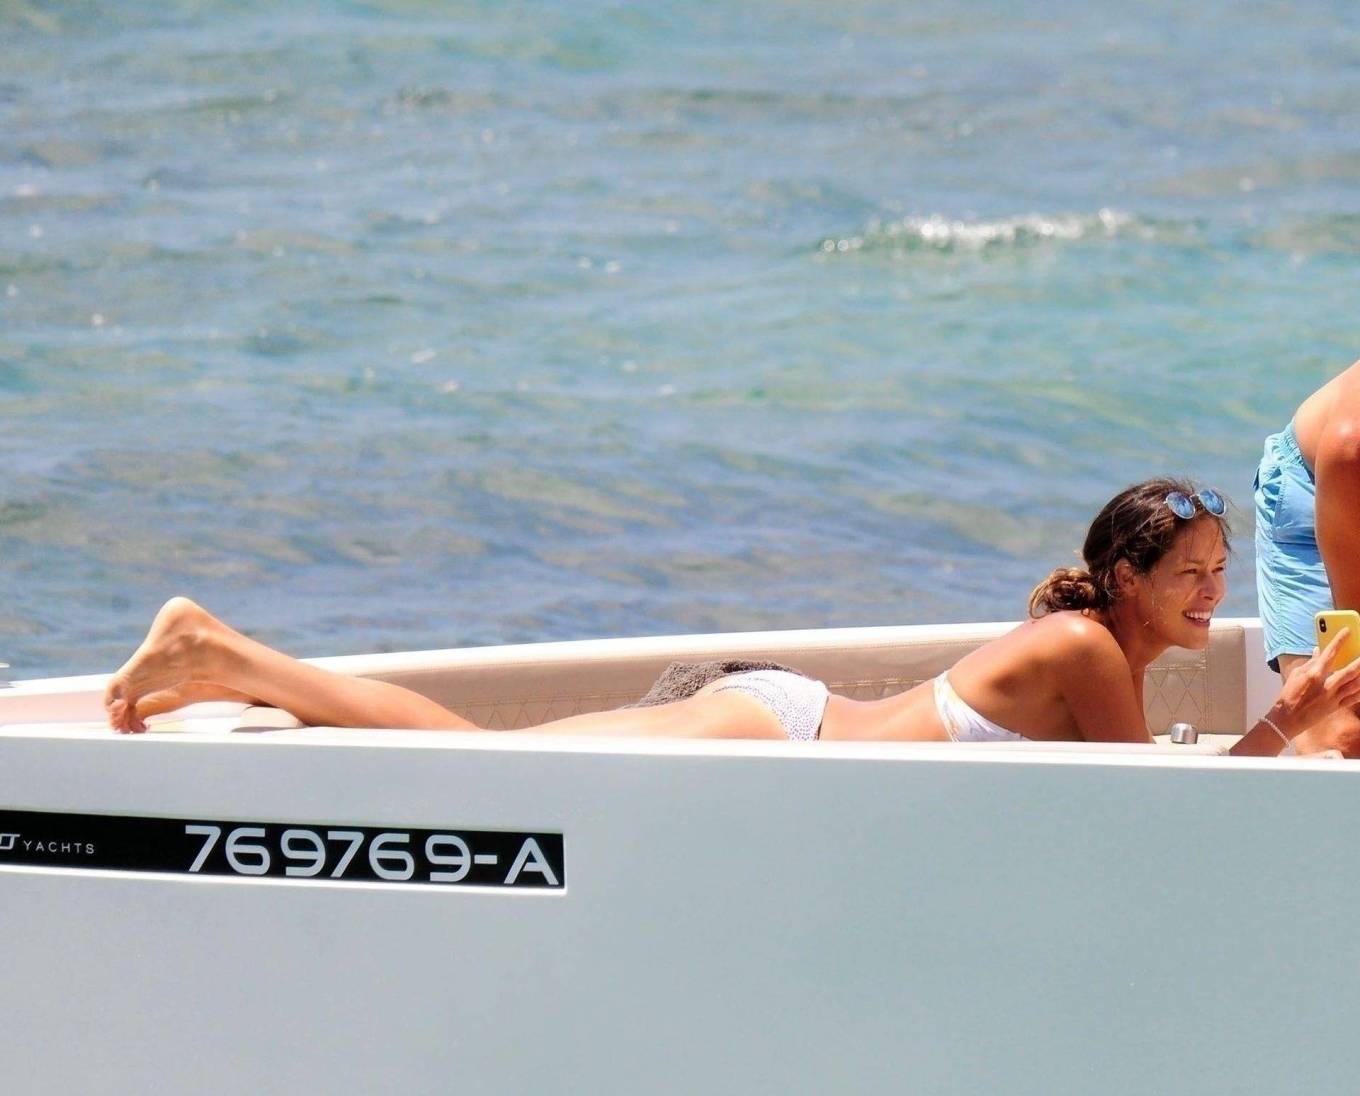 Ana Ivanovic in Bikini on a yacht in Mallorca adds